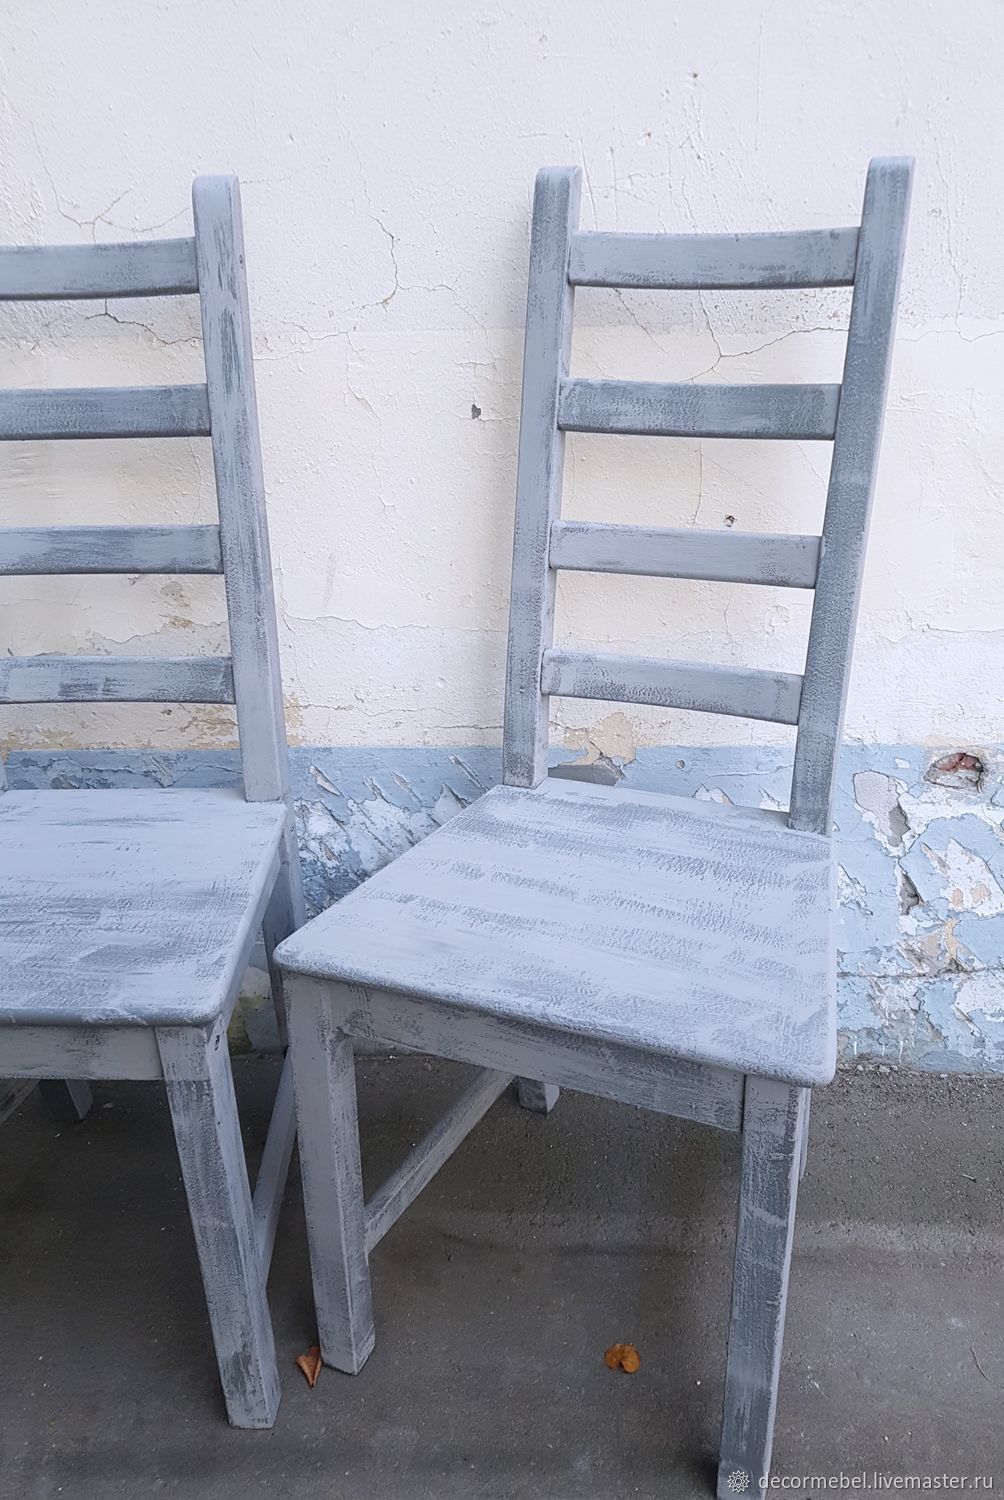 перекраска стула в белый цвет